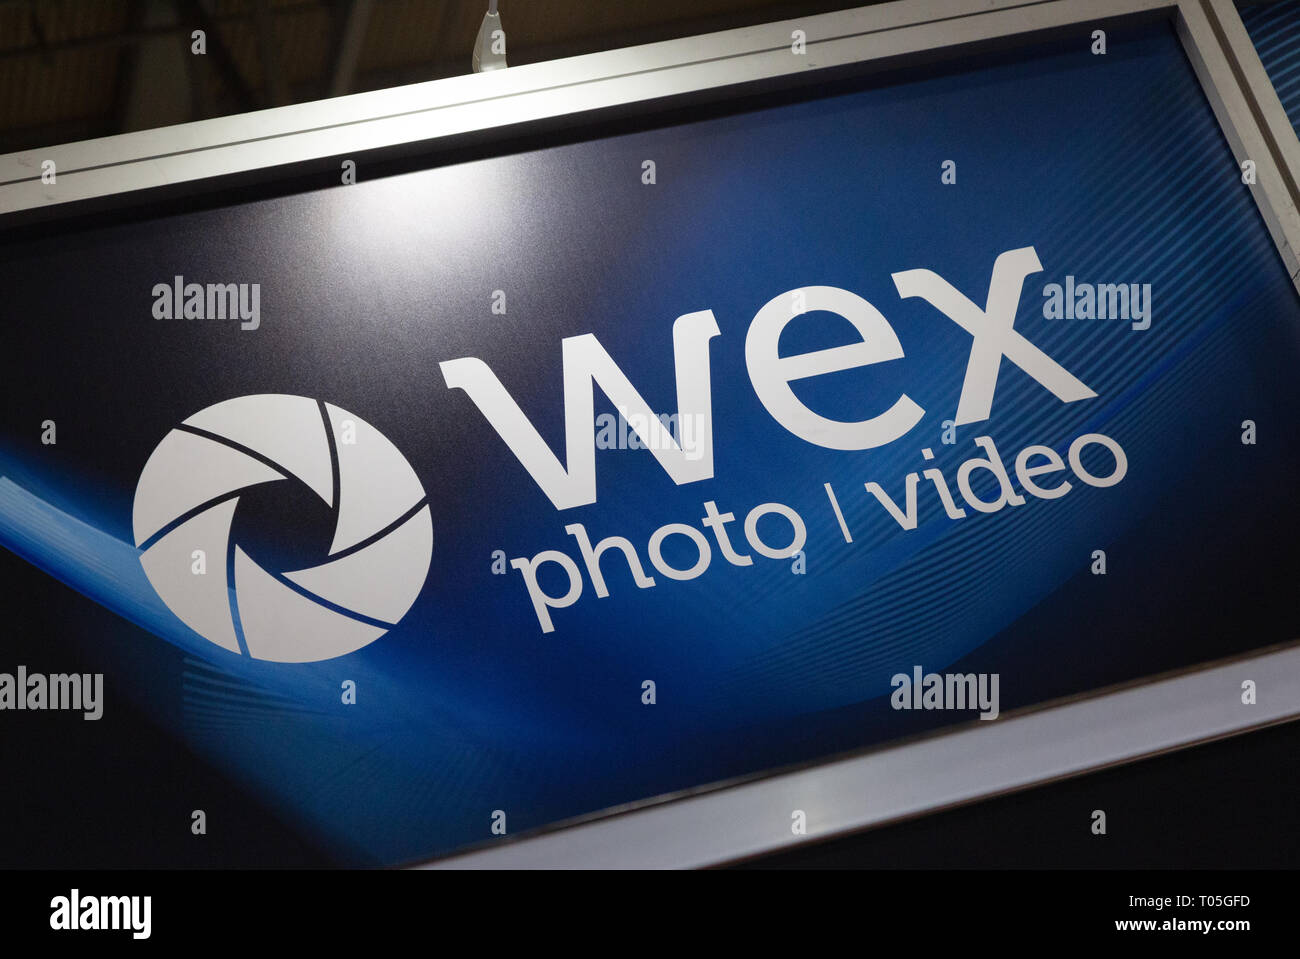 Wex store; Wex Foto Video Norwich Zeichen - ehemals Wex Fotografische, eine fotografische Händler in Norwich, Großbritannien Stockfoto